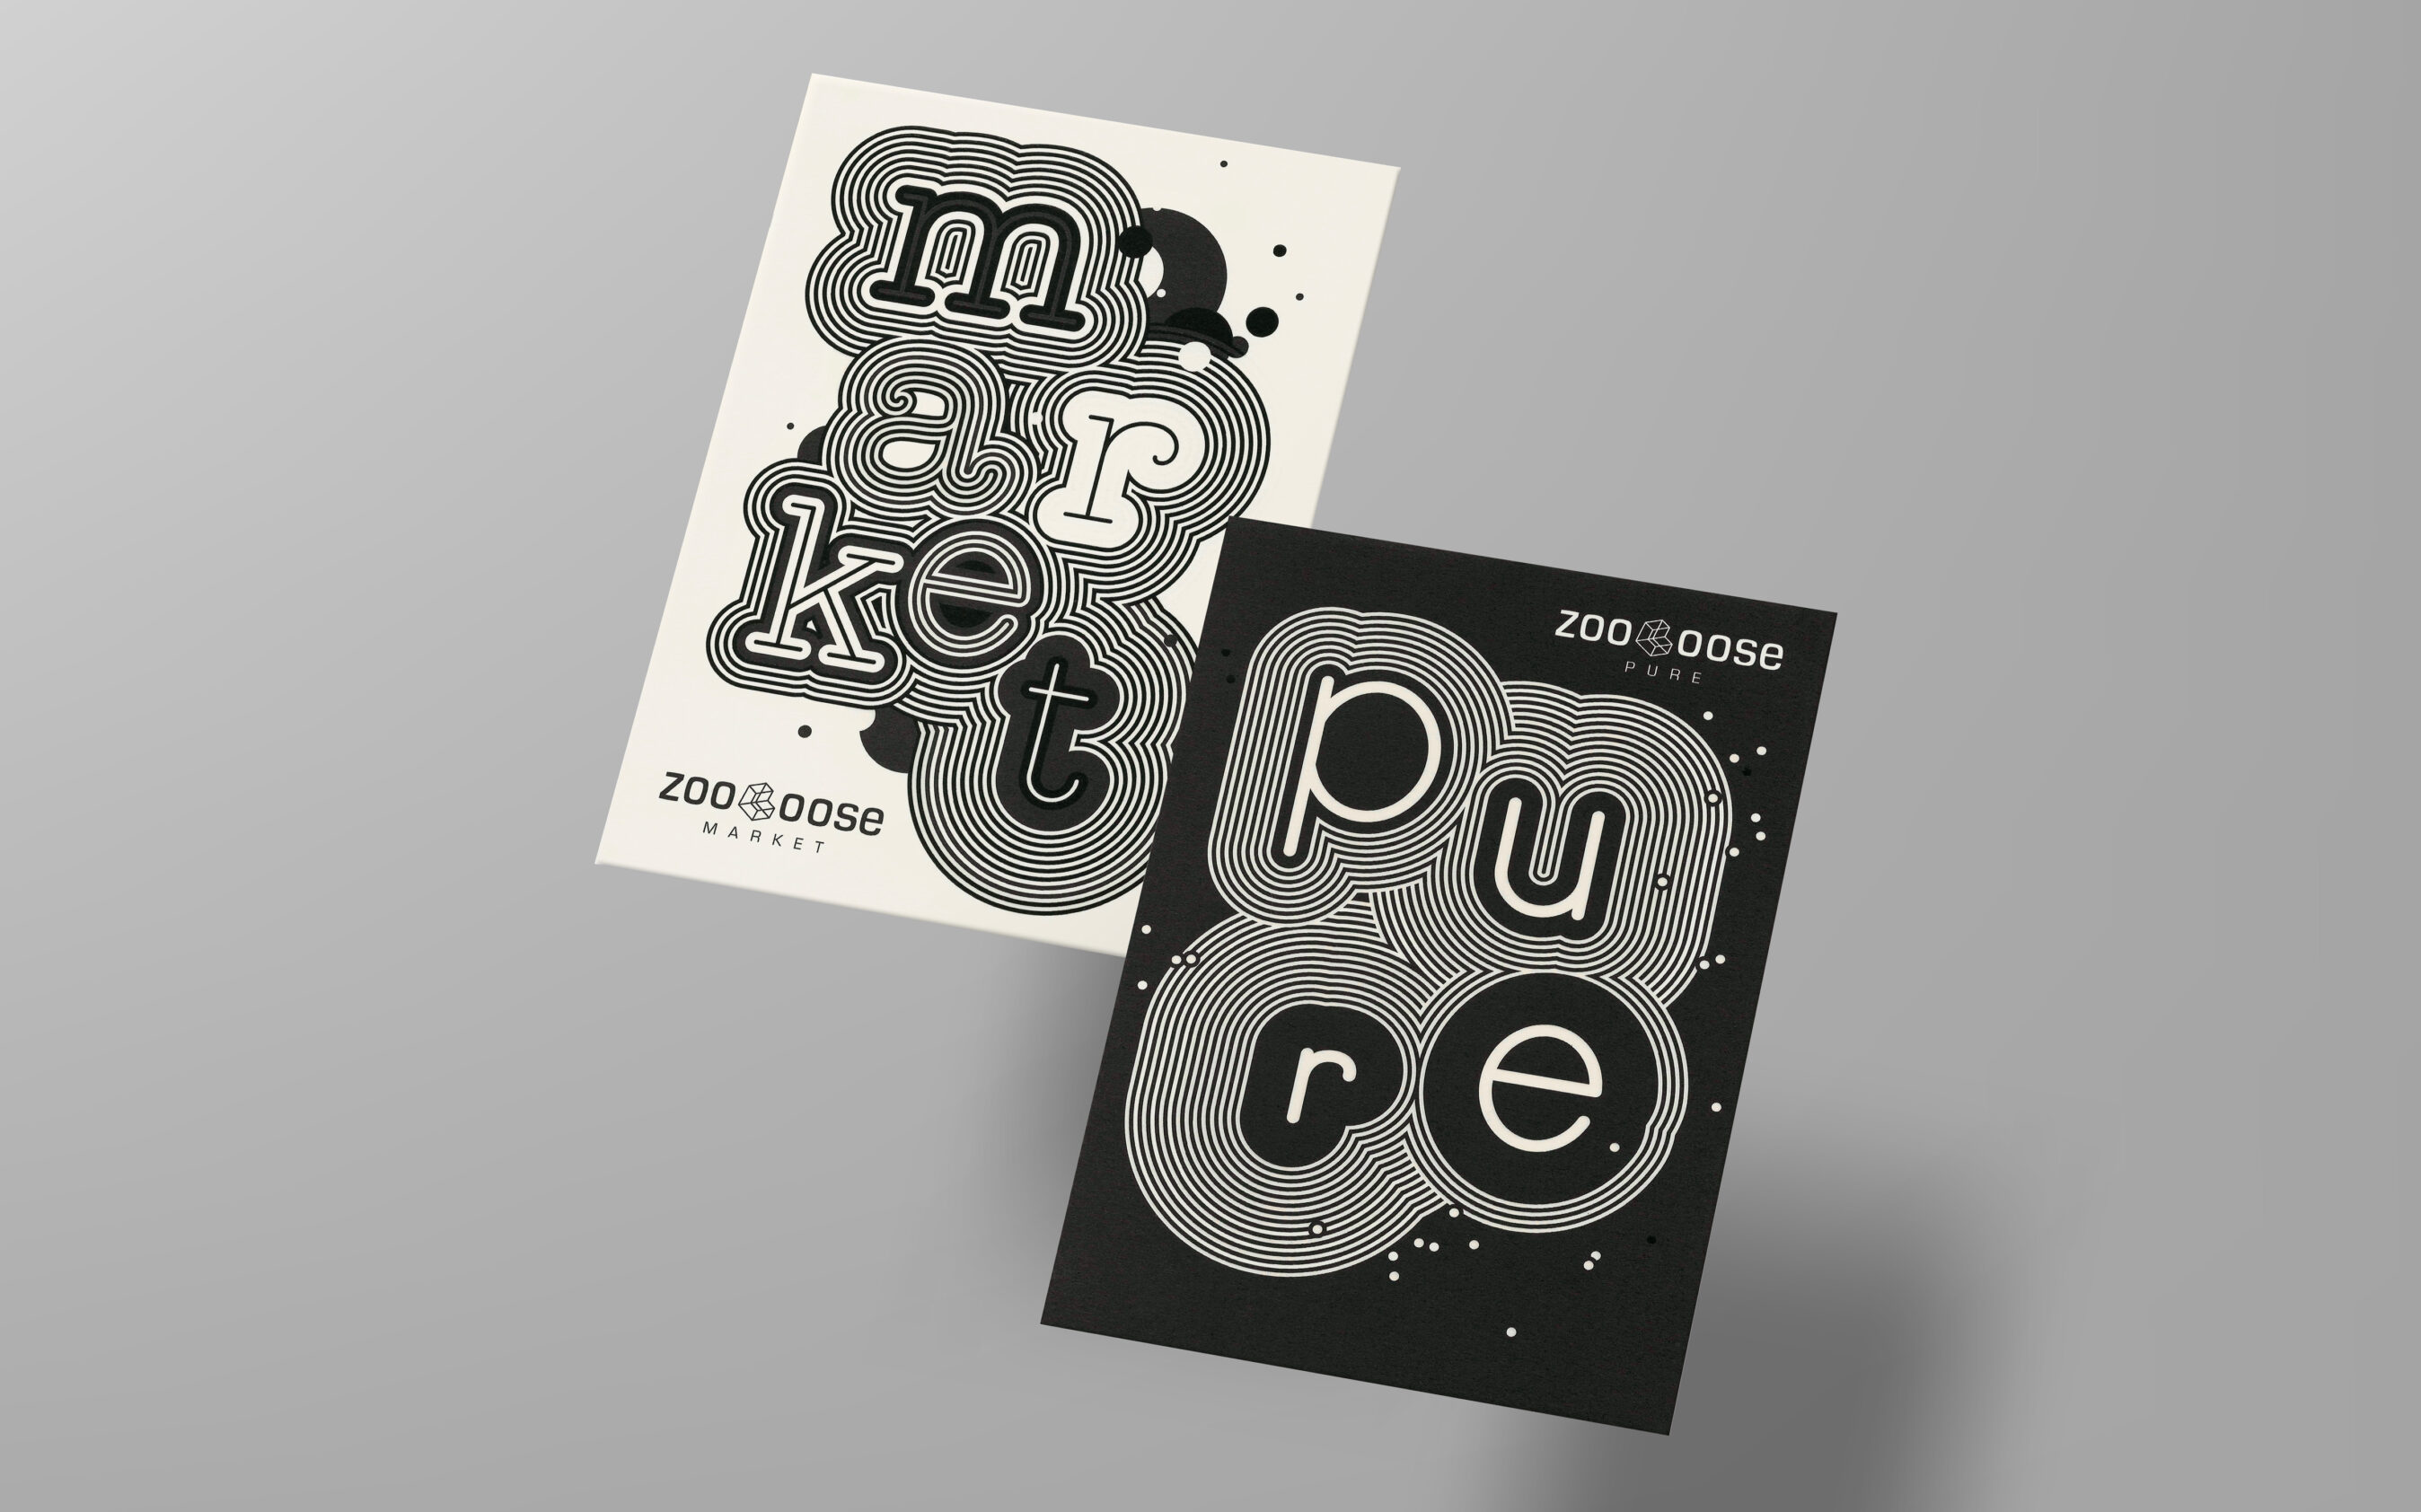 Postkartengestaltung für Zooloose Pure und Market von Grafikdesign Cueni Basel.